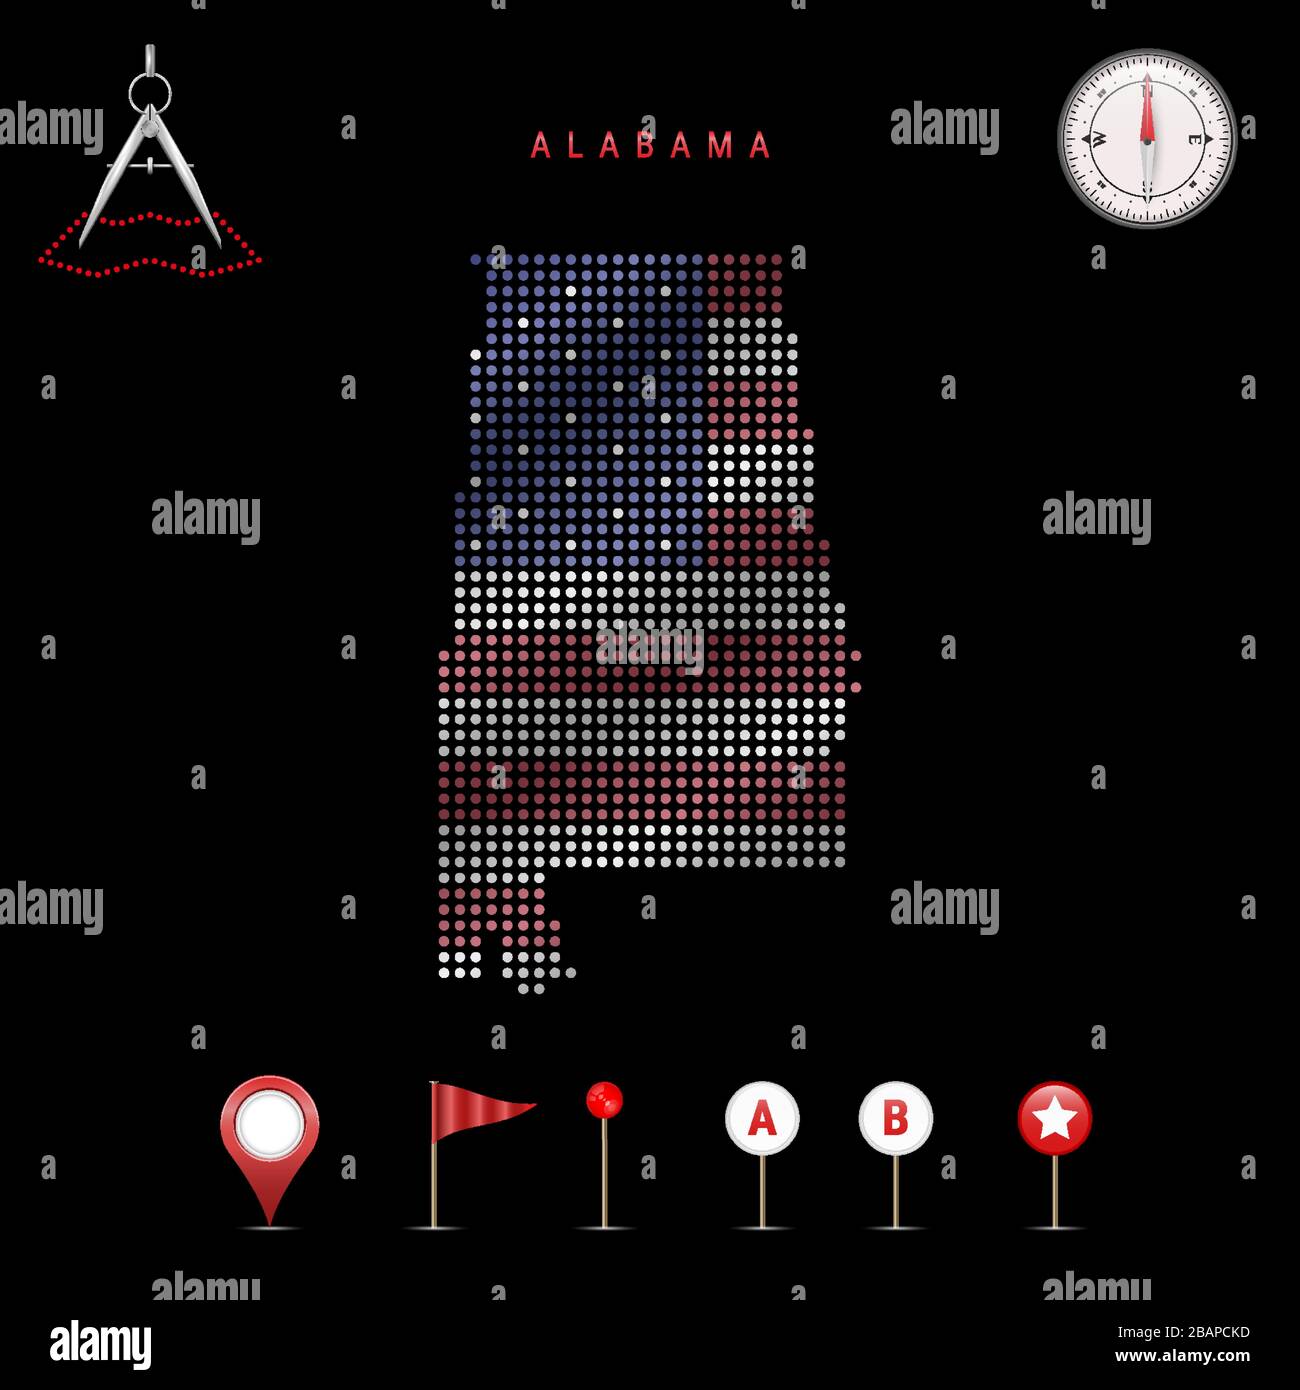 Carte pointillée de l'Alabama peinte dans les couleurs du drapeau national des États-Unis. Effet de drapeau de spéléologie. Outils de carte, ensemble d'icônes cartographiques. Vecto Illustration de Vecteur